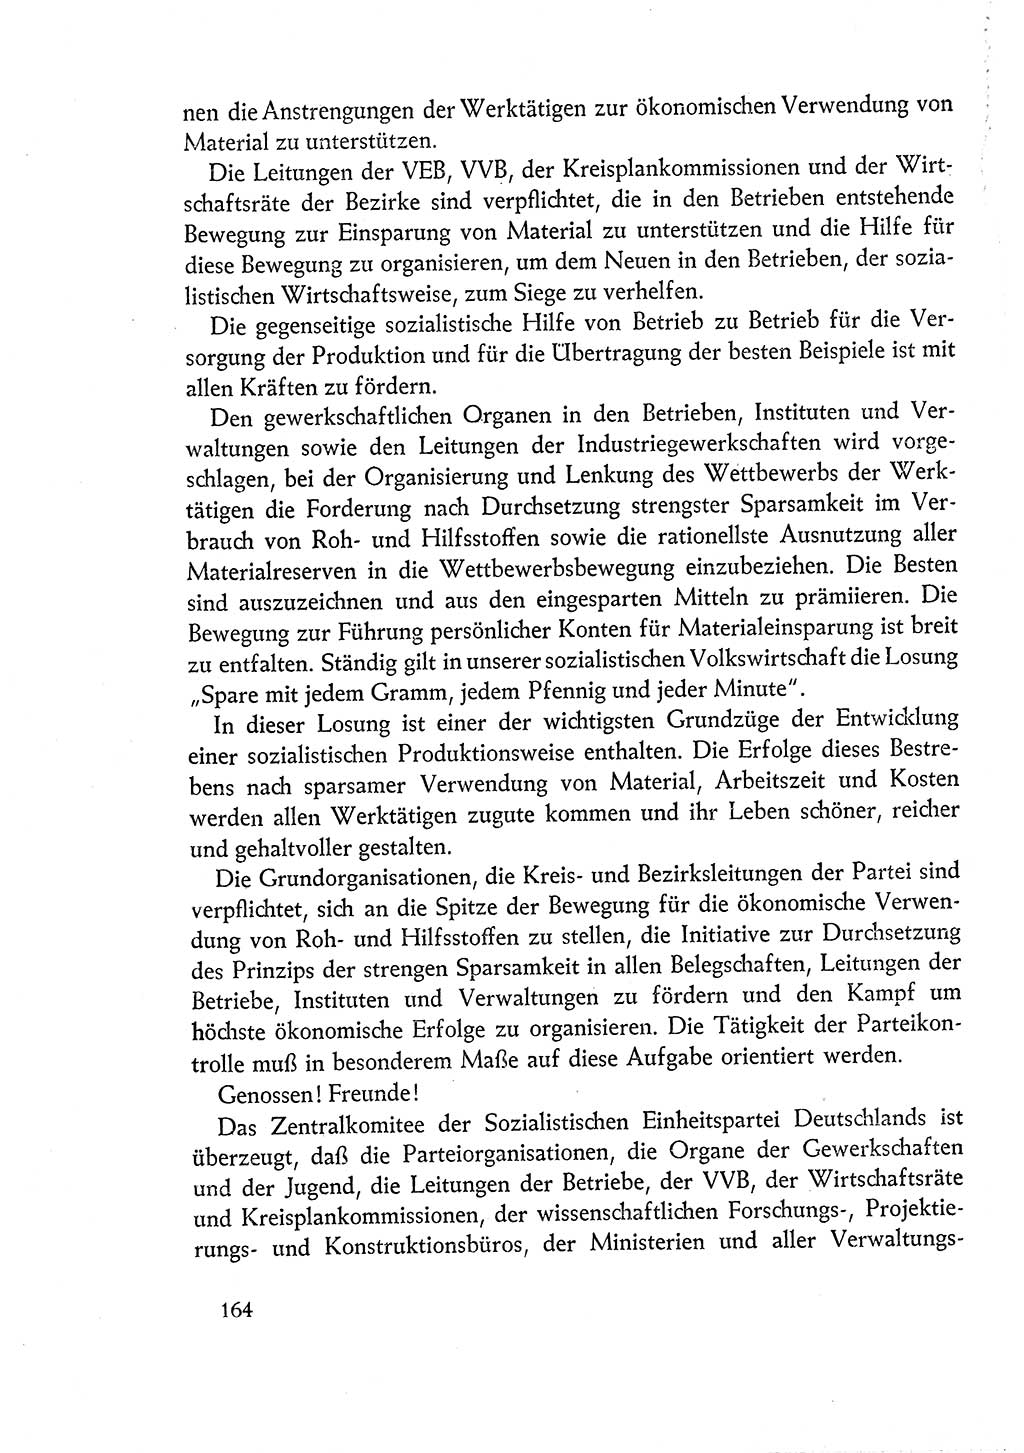 Dokumente der Sozialistischen Einheitspartei Deutschlands (SED) [Deutsche Demokratische Republik (DDR)] 1960-1961, Seite 164 (Dok. SED DDR 1960-1961, S. 164)